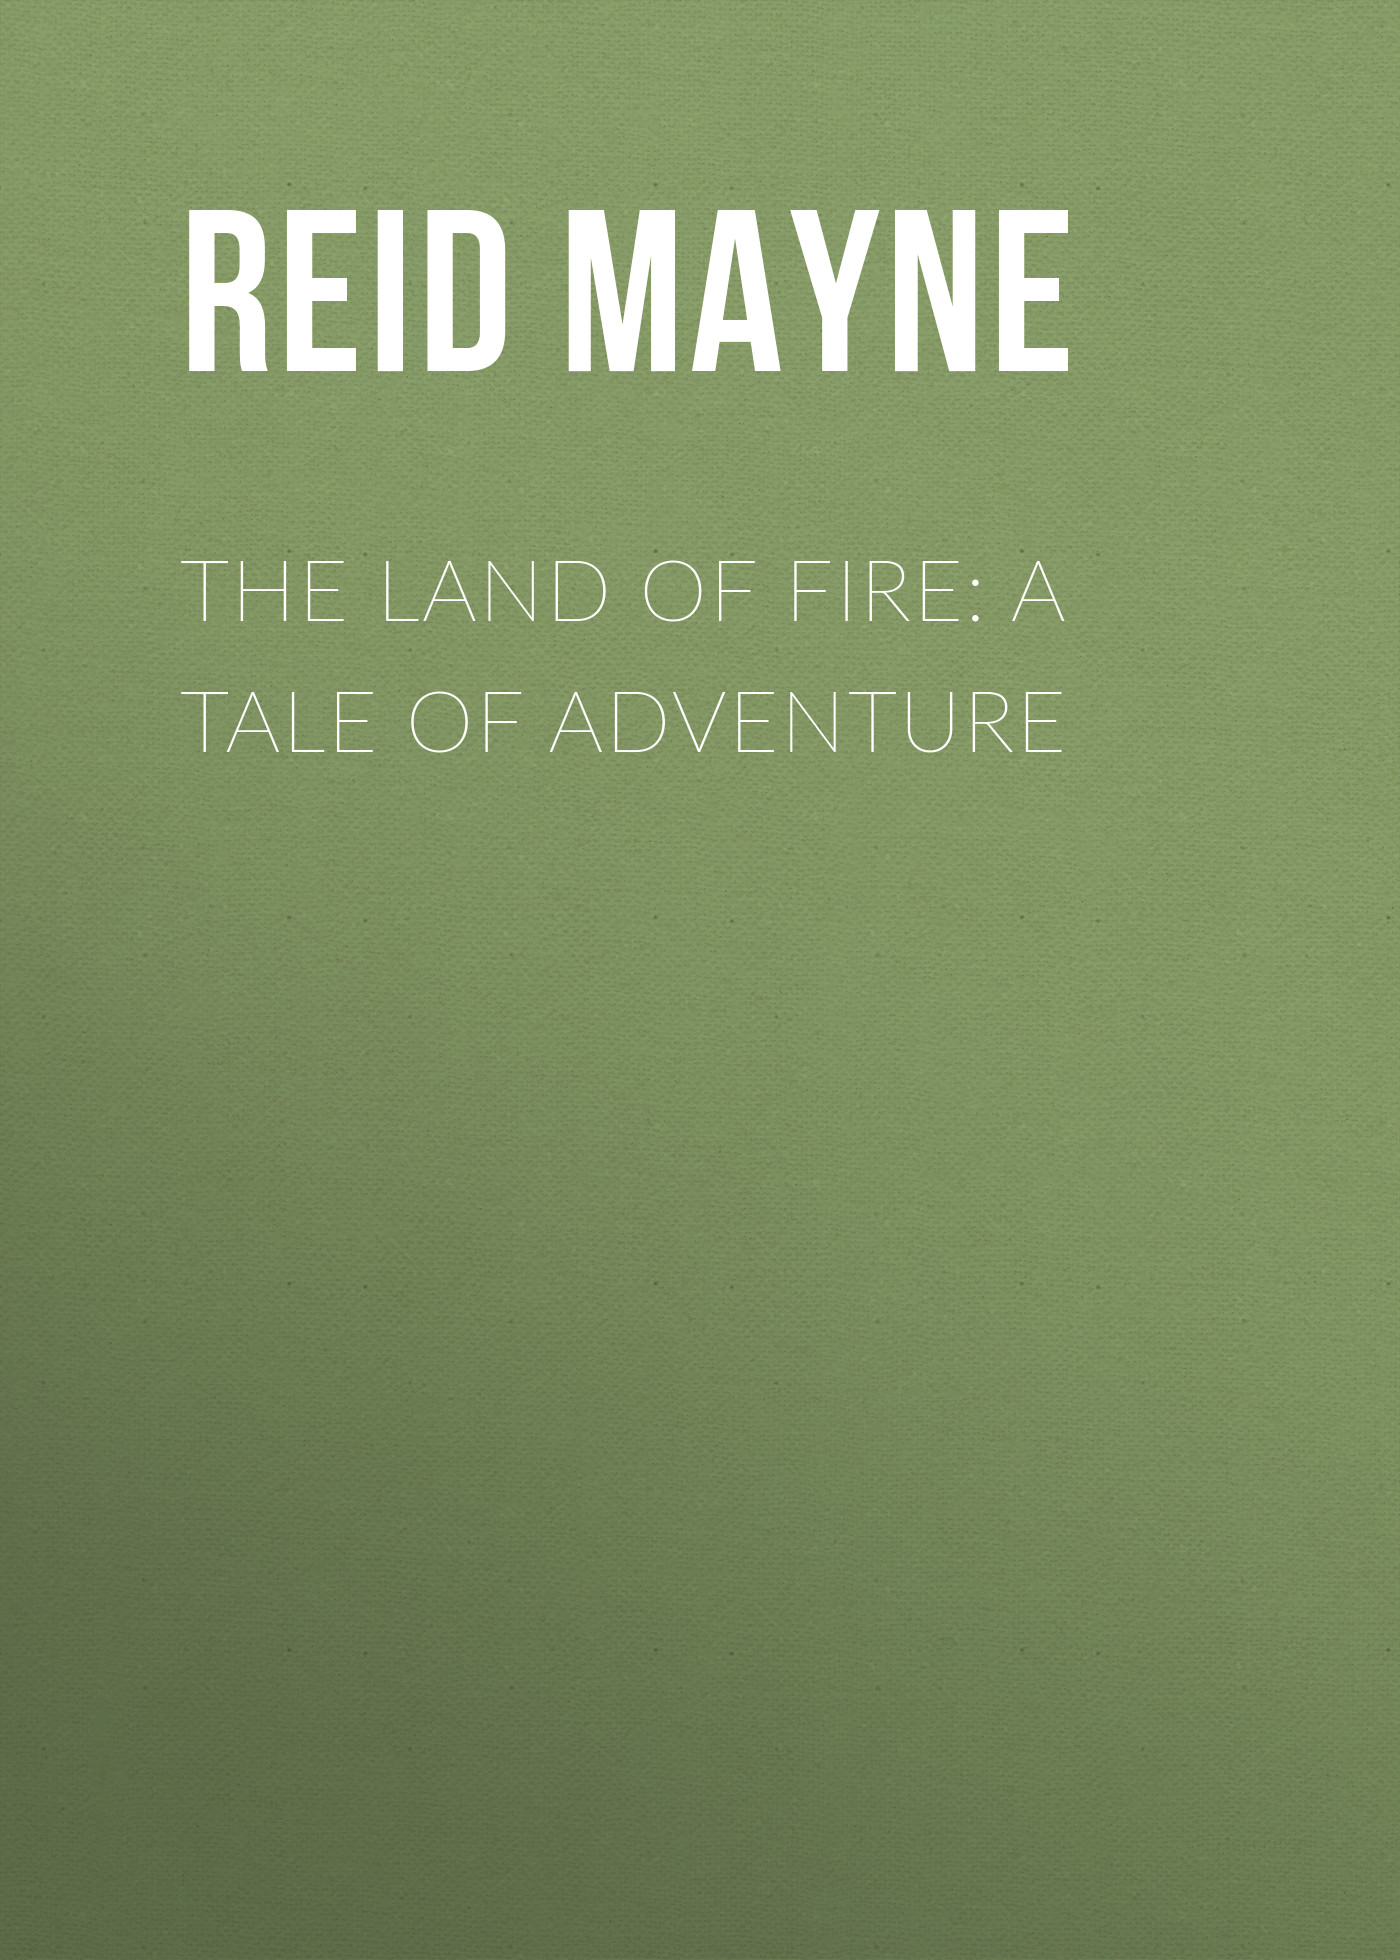 Книга The Land of Fire: A Tale of Adventure из серии , созданная Mayne Reid, может относится к жанру Литература 19 века, Зарубежная старинная литература, Зарубежная классика, Зарубежные детские книги. Стоимость электронной книги The Land of Fire: A Tale of Adventure с идентификатором 25448980 составляет 0 руб.